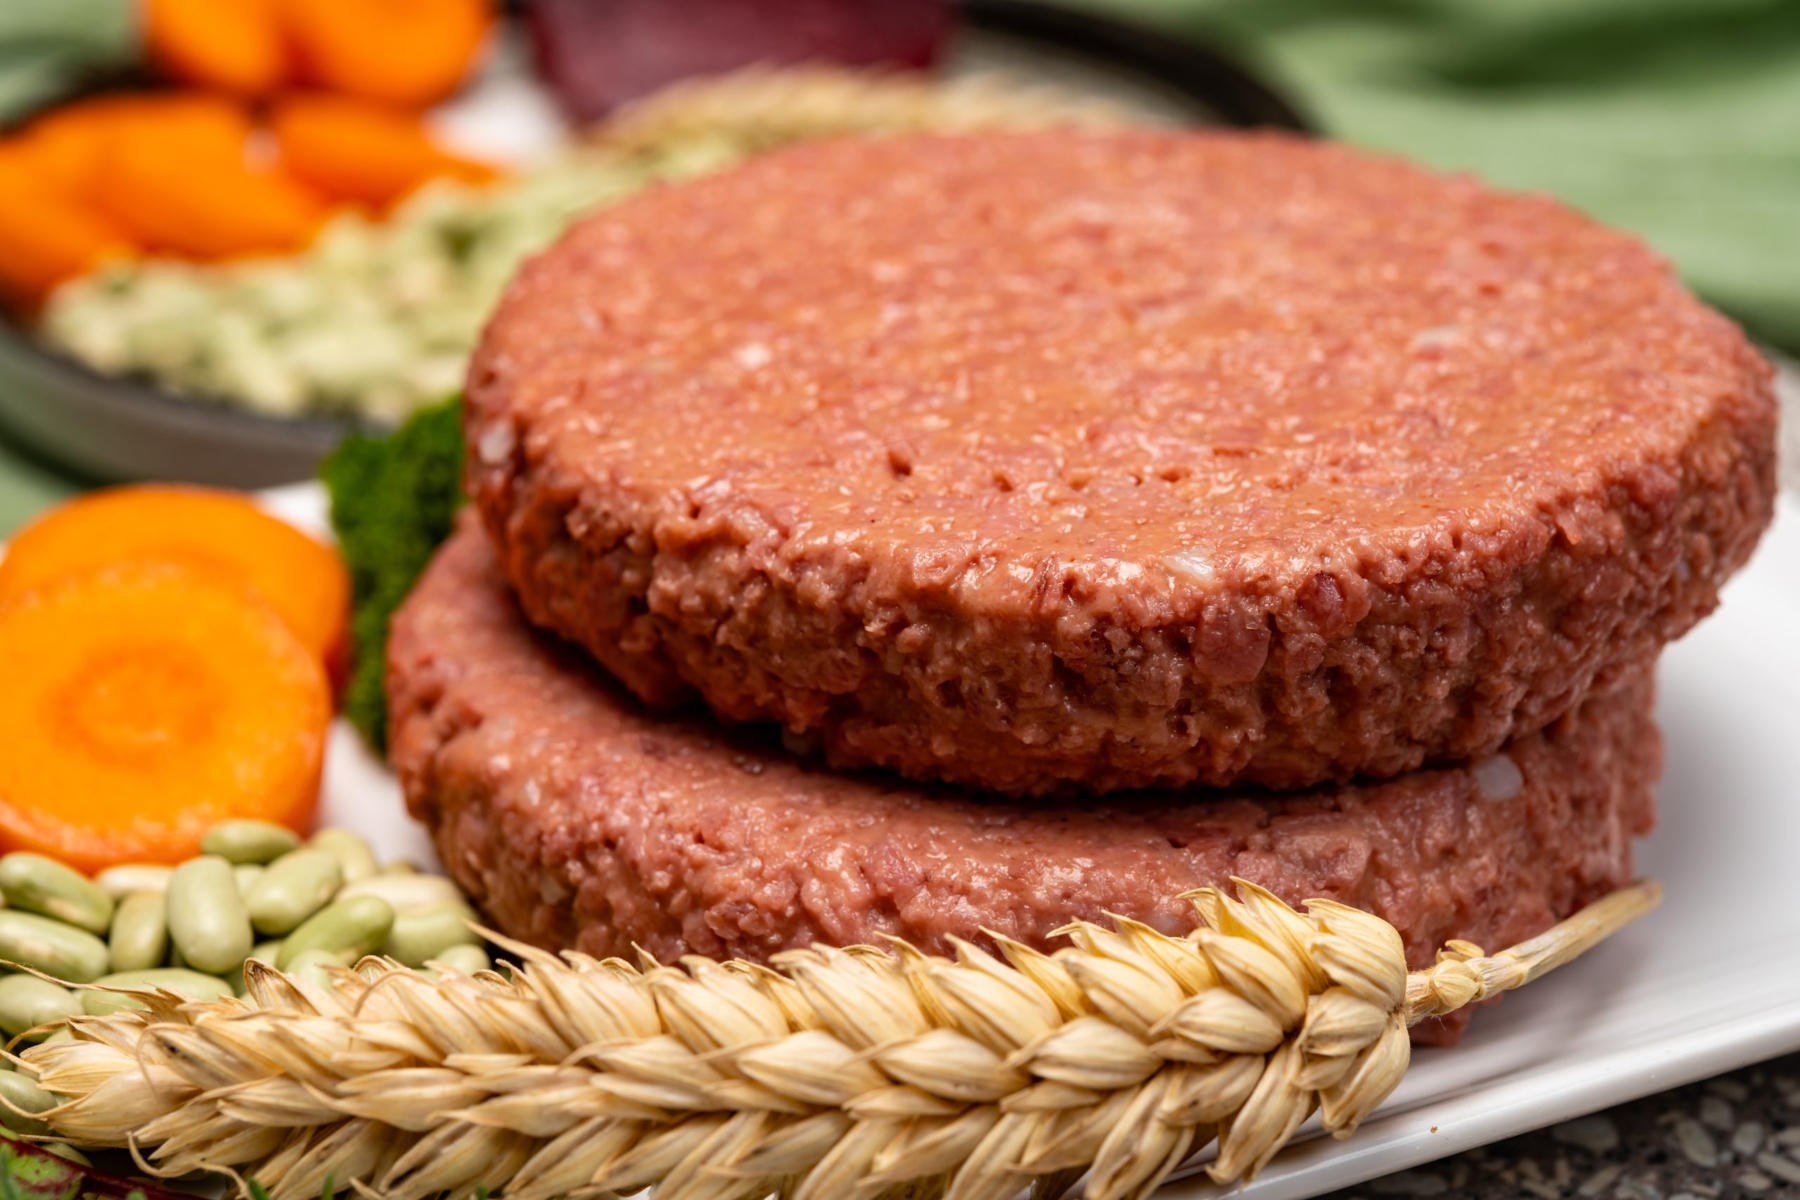 Φυτικό προϊόντα: Τα φυτικά προϊόντα κρέατος είναι πιο υγιεινά, αλλά συχνά στερούνται θρεπτικών συστατικών